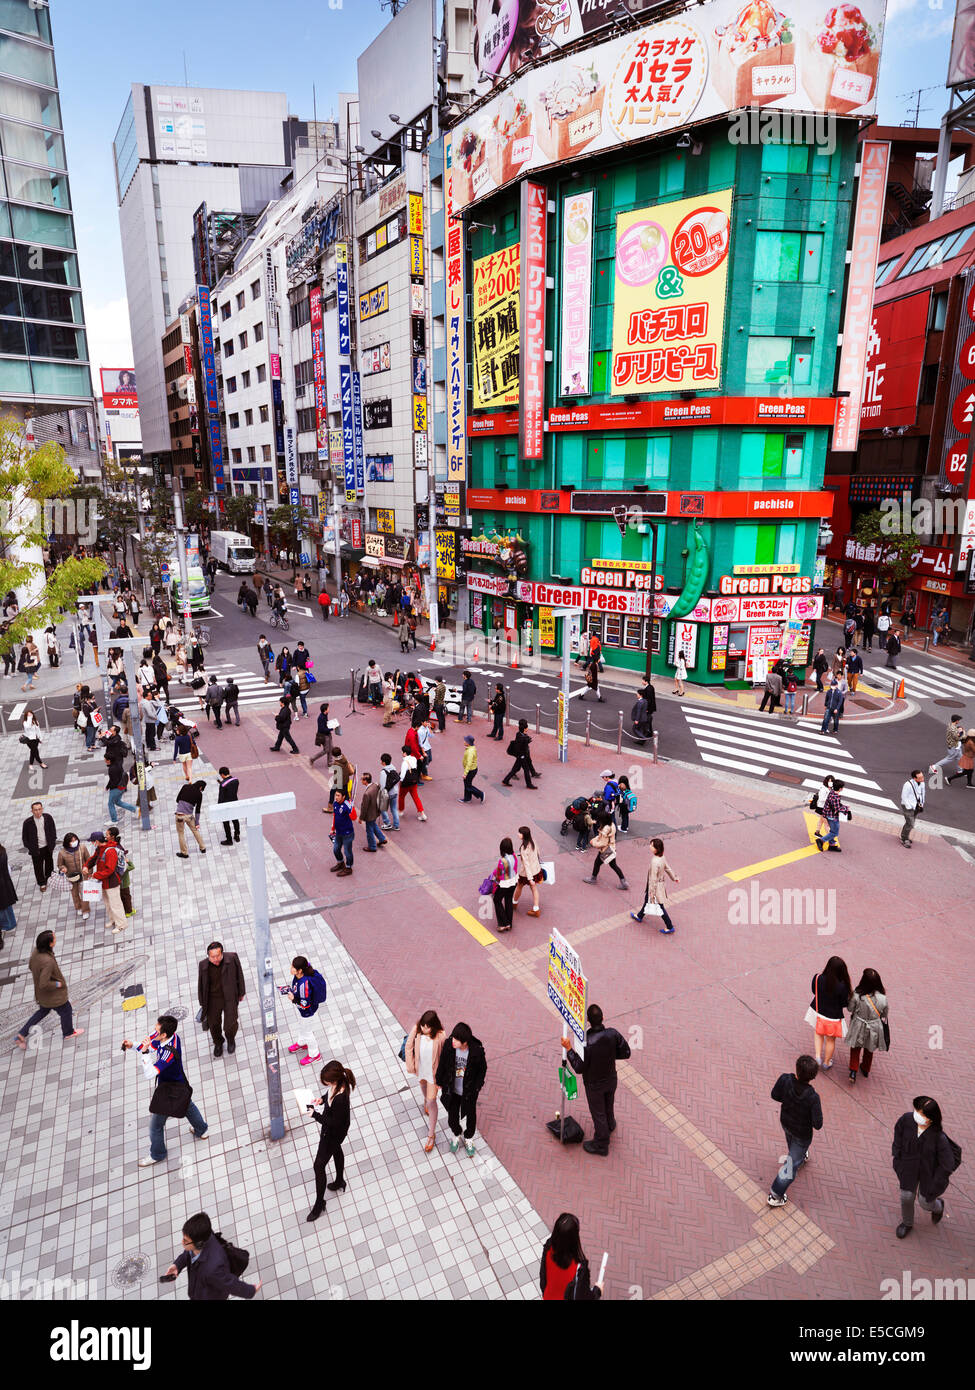 People on a plaza at Shinjuku JR station South exit in Shinjuku, Tokyo, Japan 2014 Stock Photo